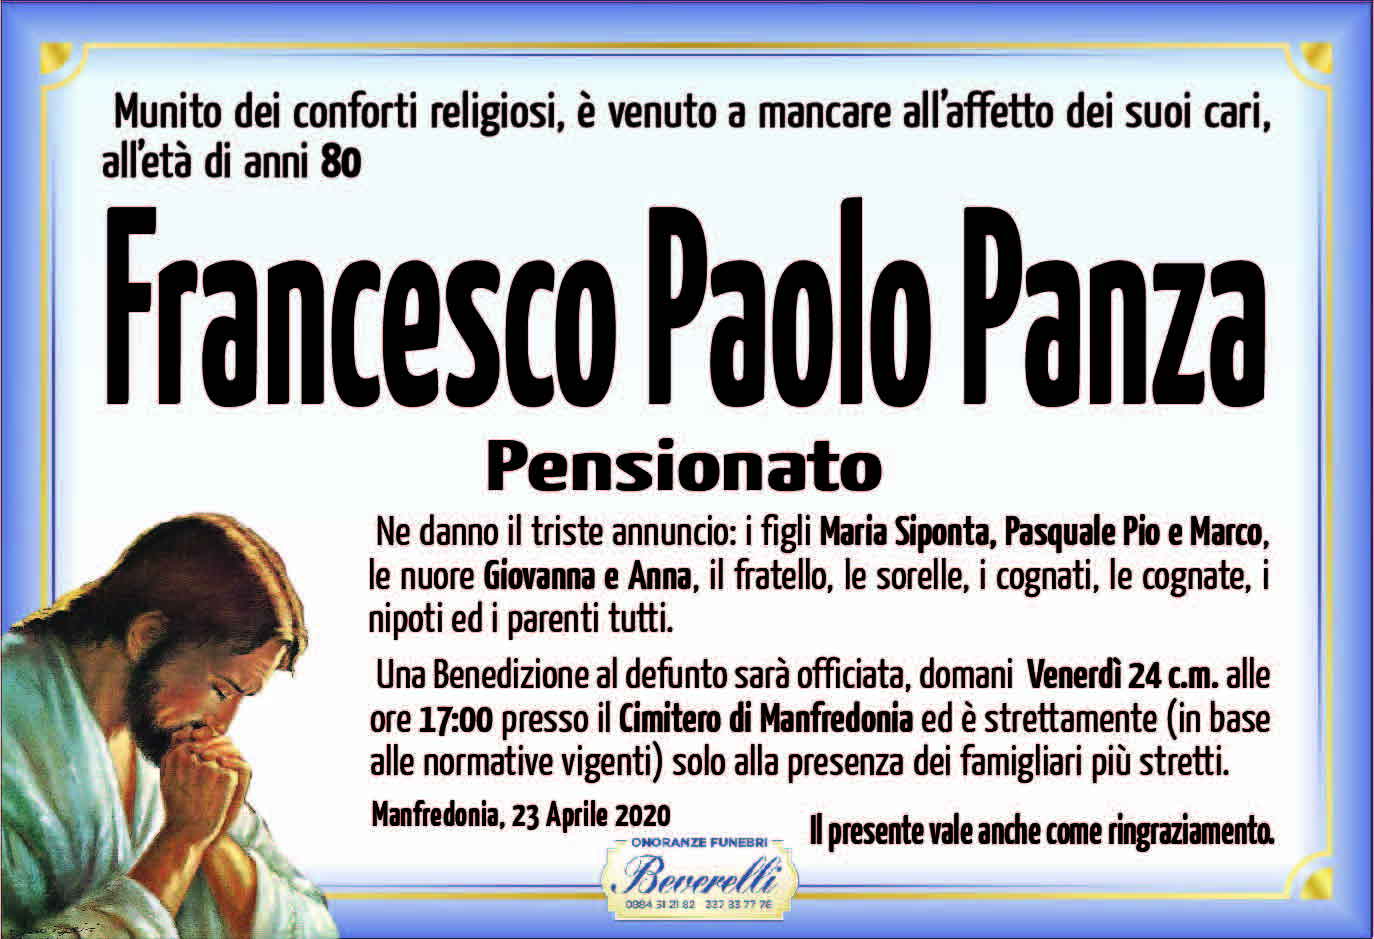 Francesco Paolo Panza